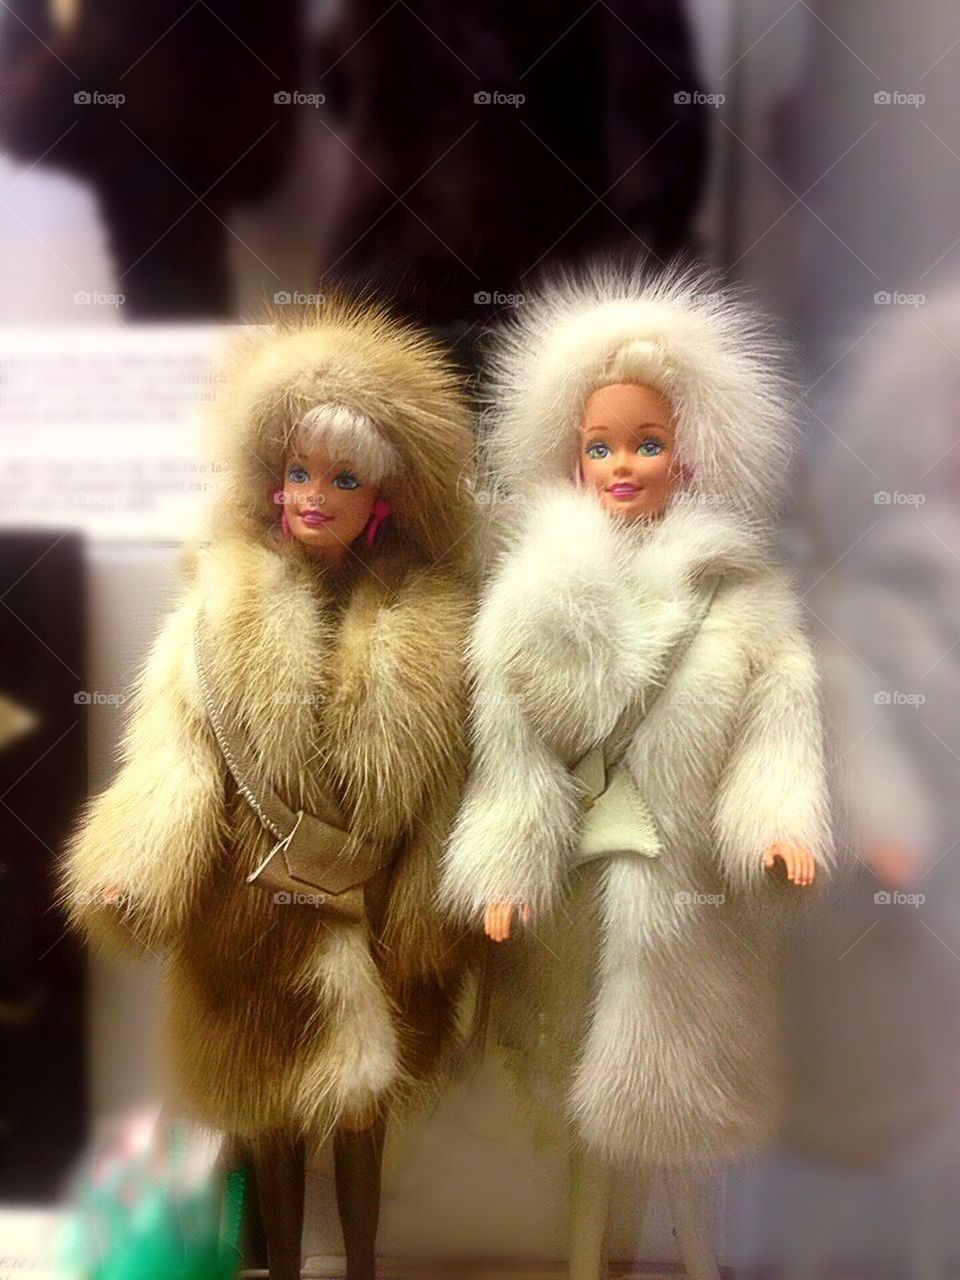 Barbies in fur coats